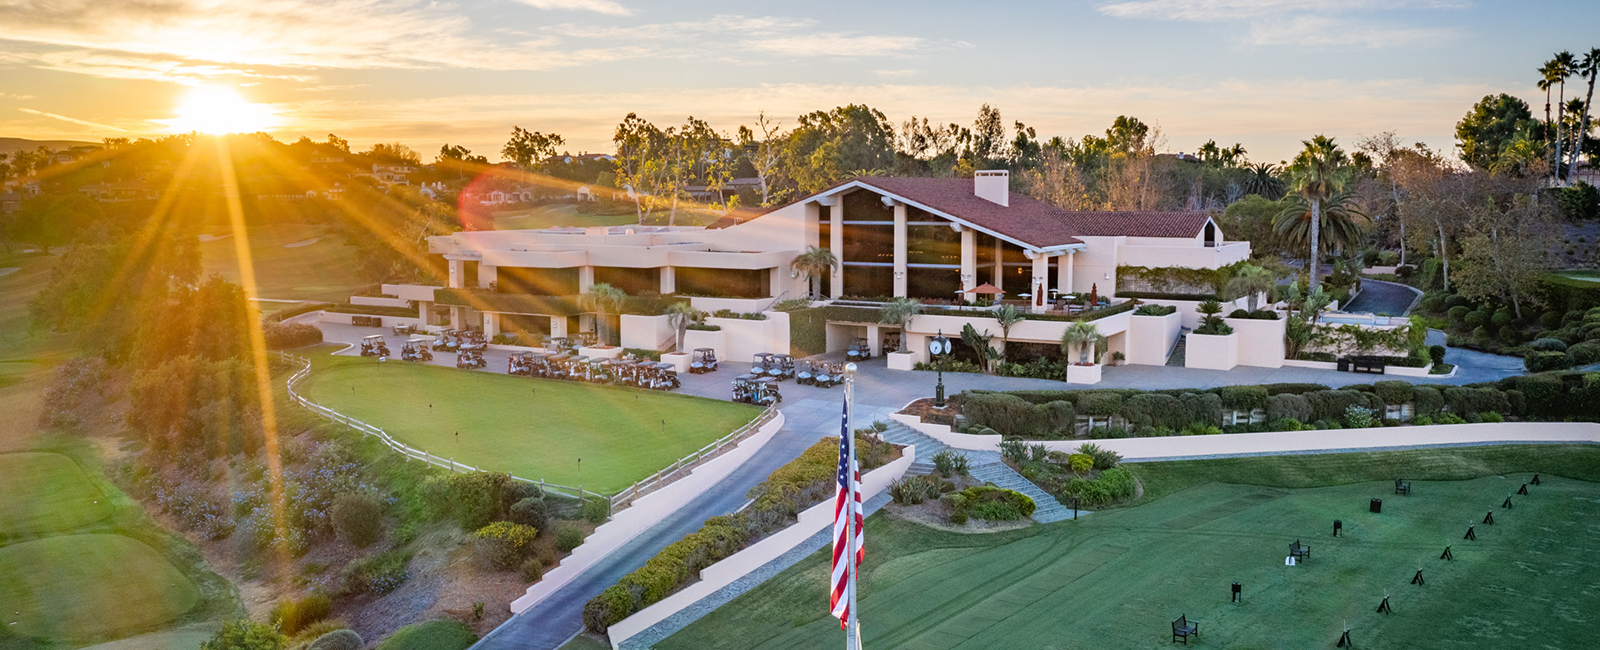 Contact Us | Membership & Golf at The Farms Golf Club in Rancho Santa Fe, CA